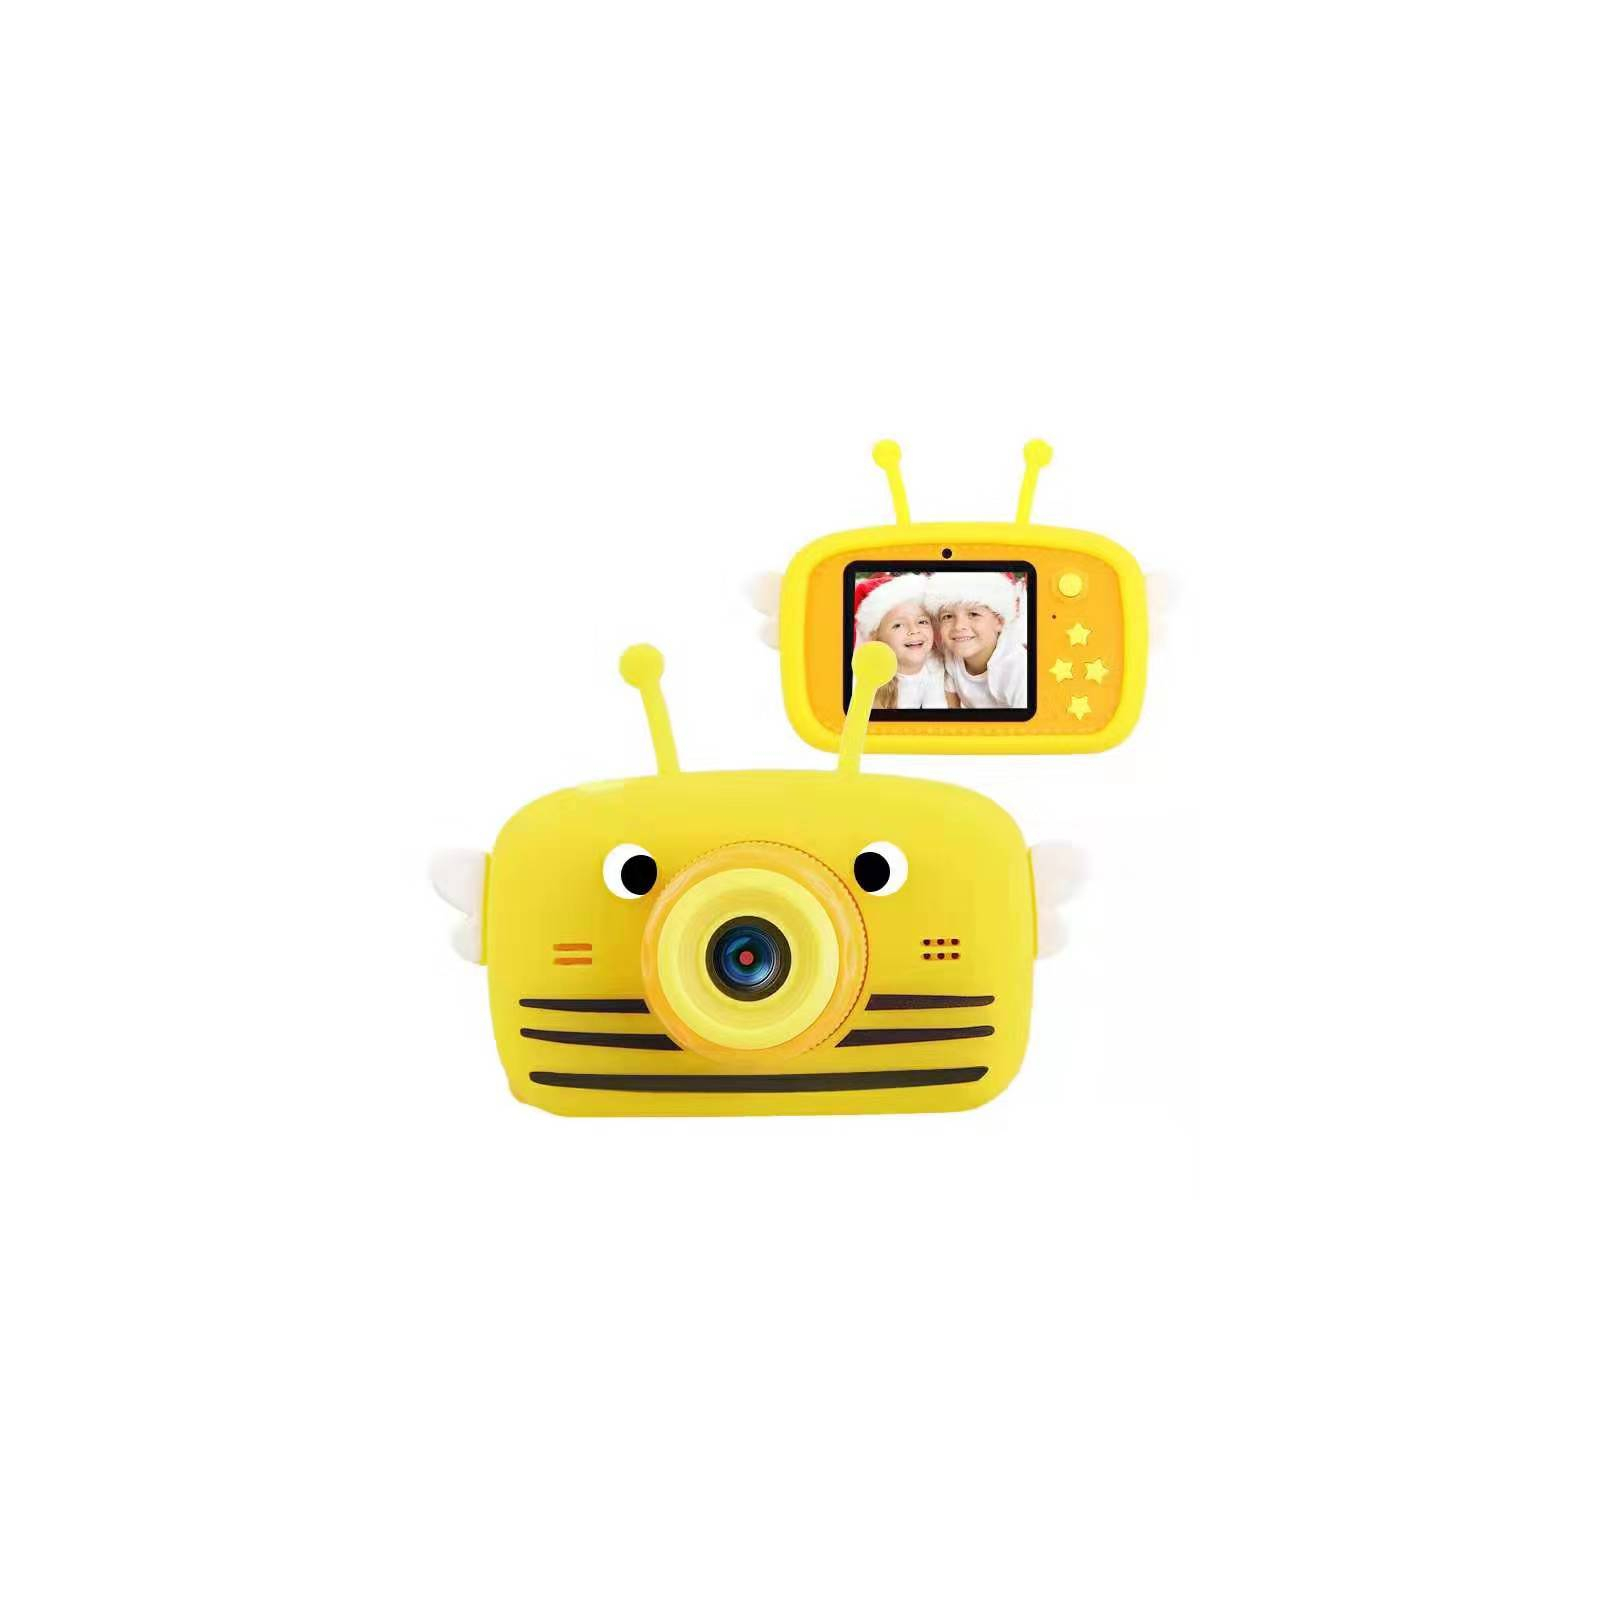 Интерактивная игрушка XoKo Bee Dual Lens Цифровой детский фотоаппарат розовый (KVR-100-PN)